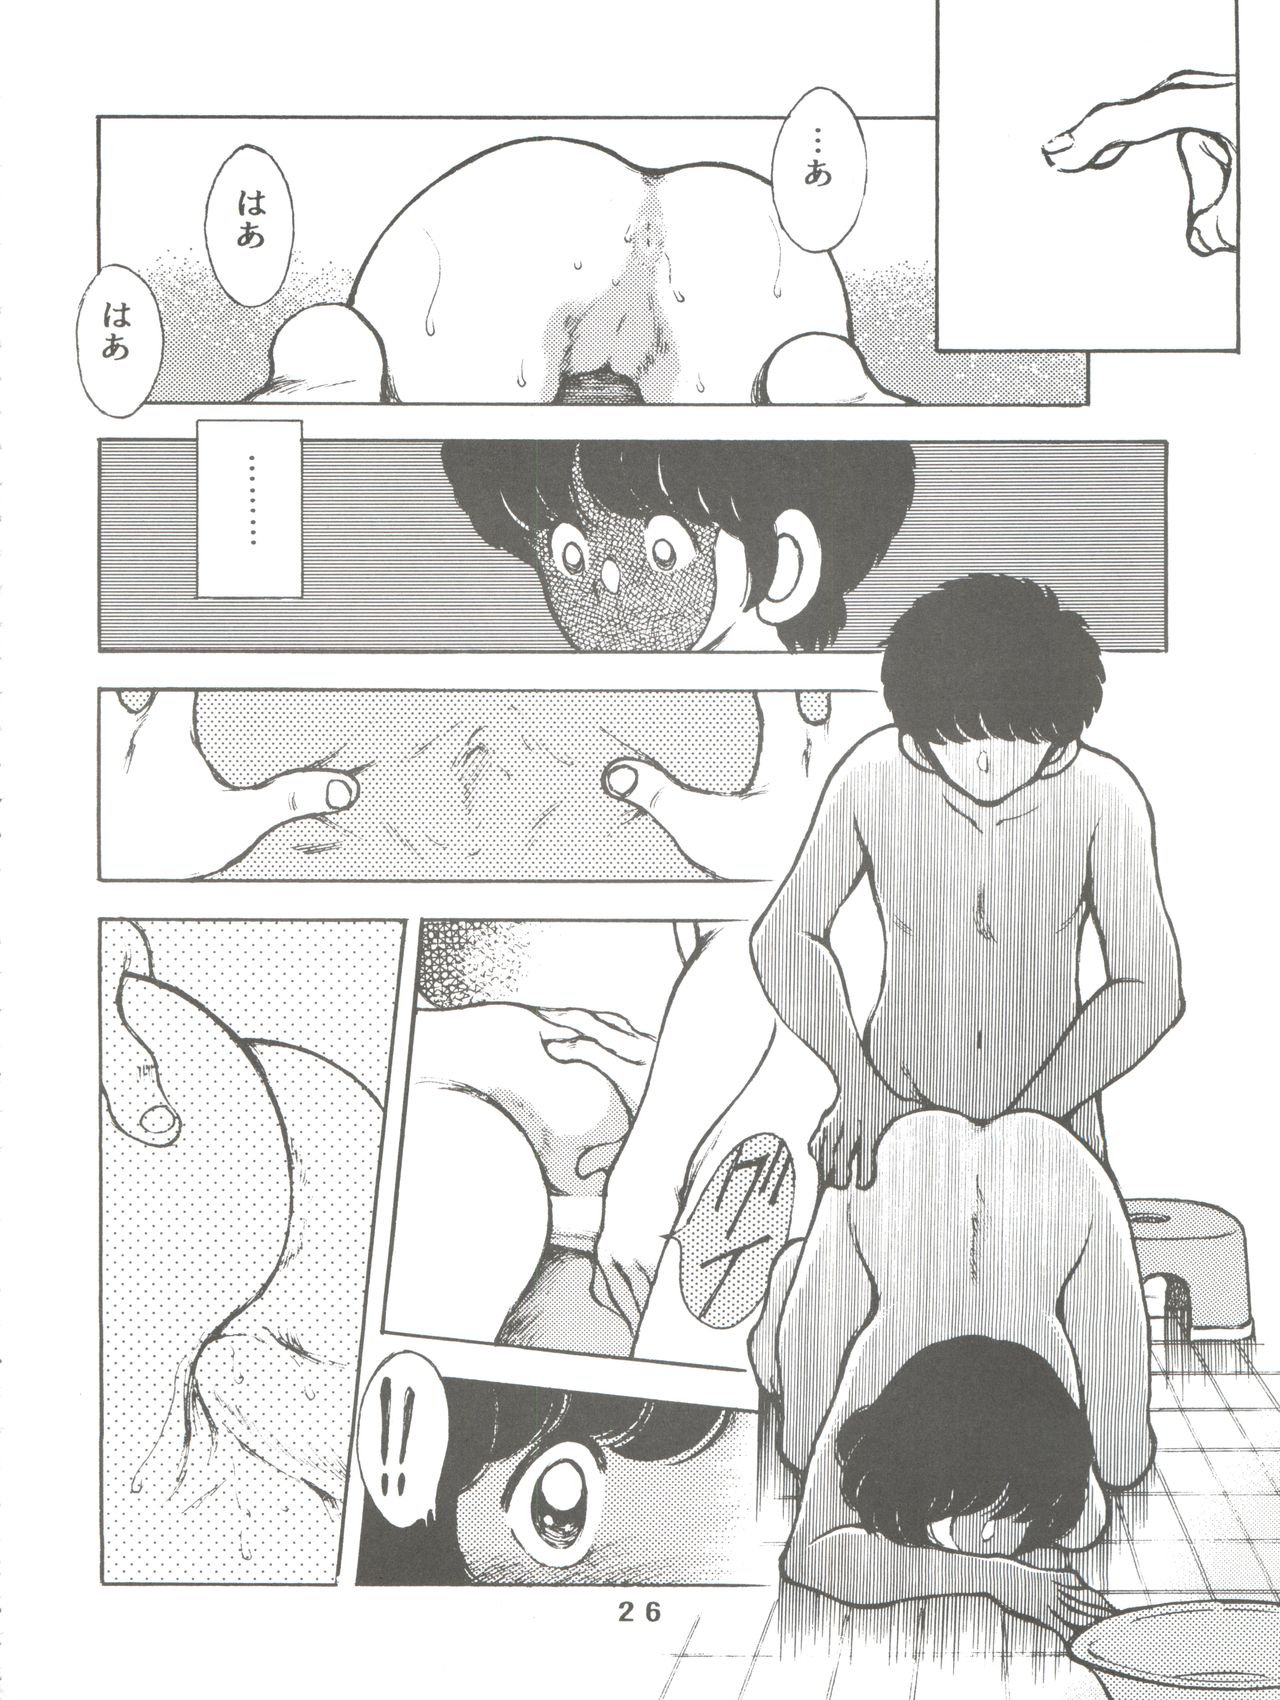 [STUDIO SHARAKU (Sharaku Seiya)] Kanshoku -TOUCH- vol.5 (Miyuki) [2000-08-13] page 26 full